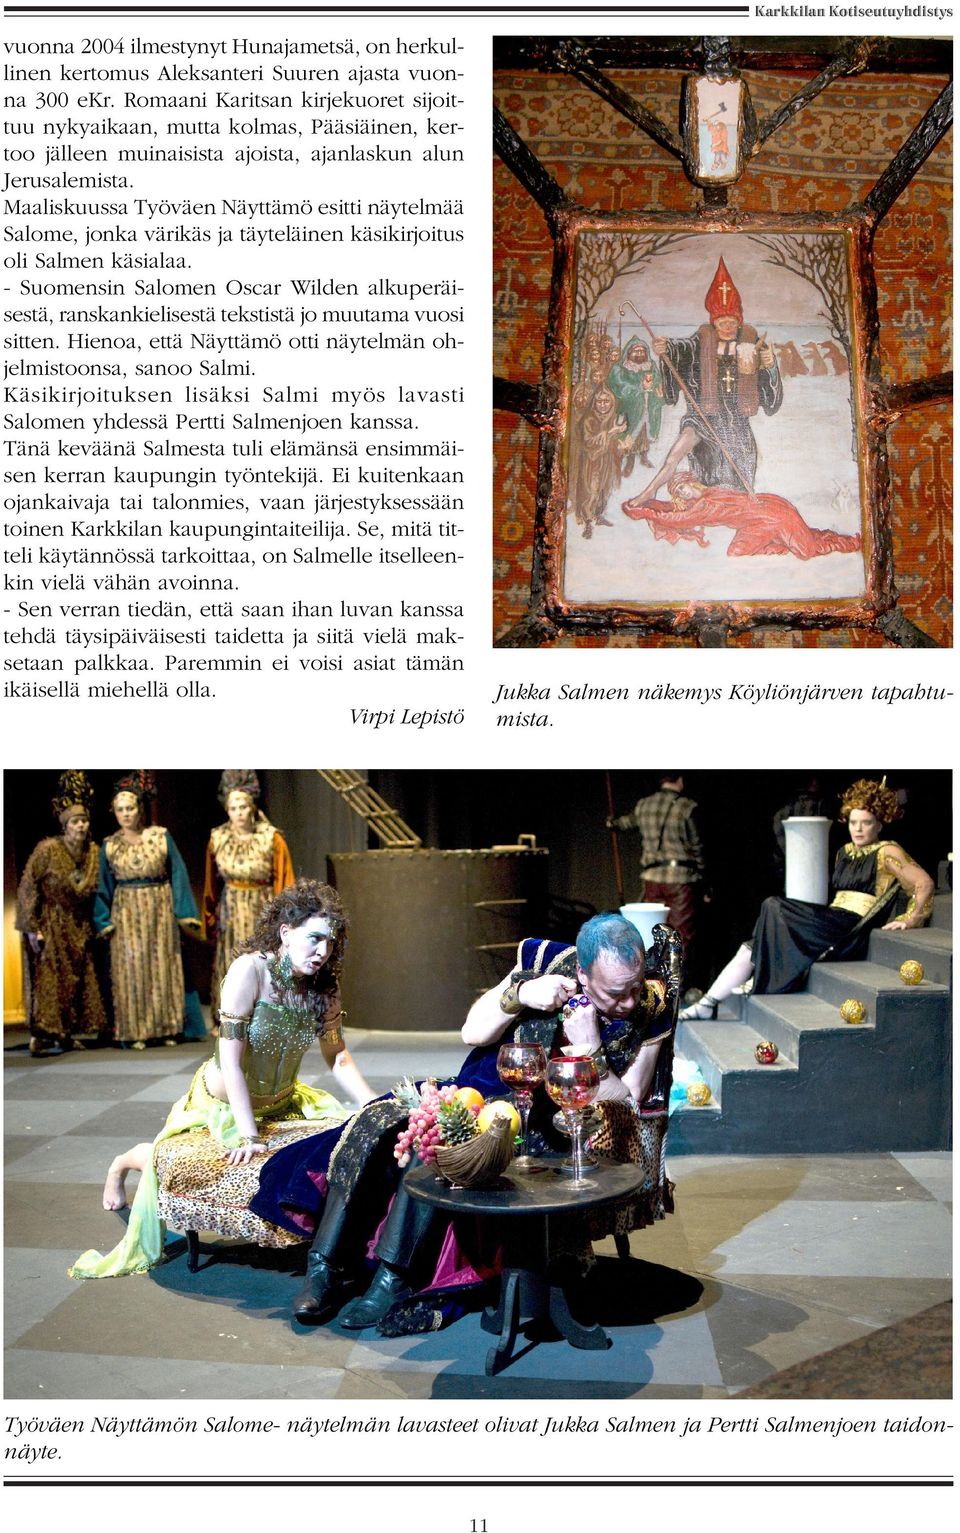 Maaliskuussa Työväen Näyttämö esitti näytelmää Salome, jonka värikäs ja täyteläinen käsikirjoitus oli Salmen käsialaa.